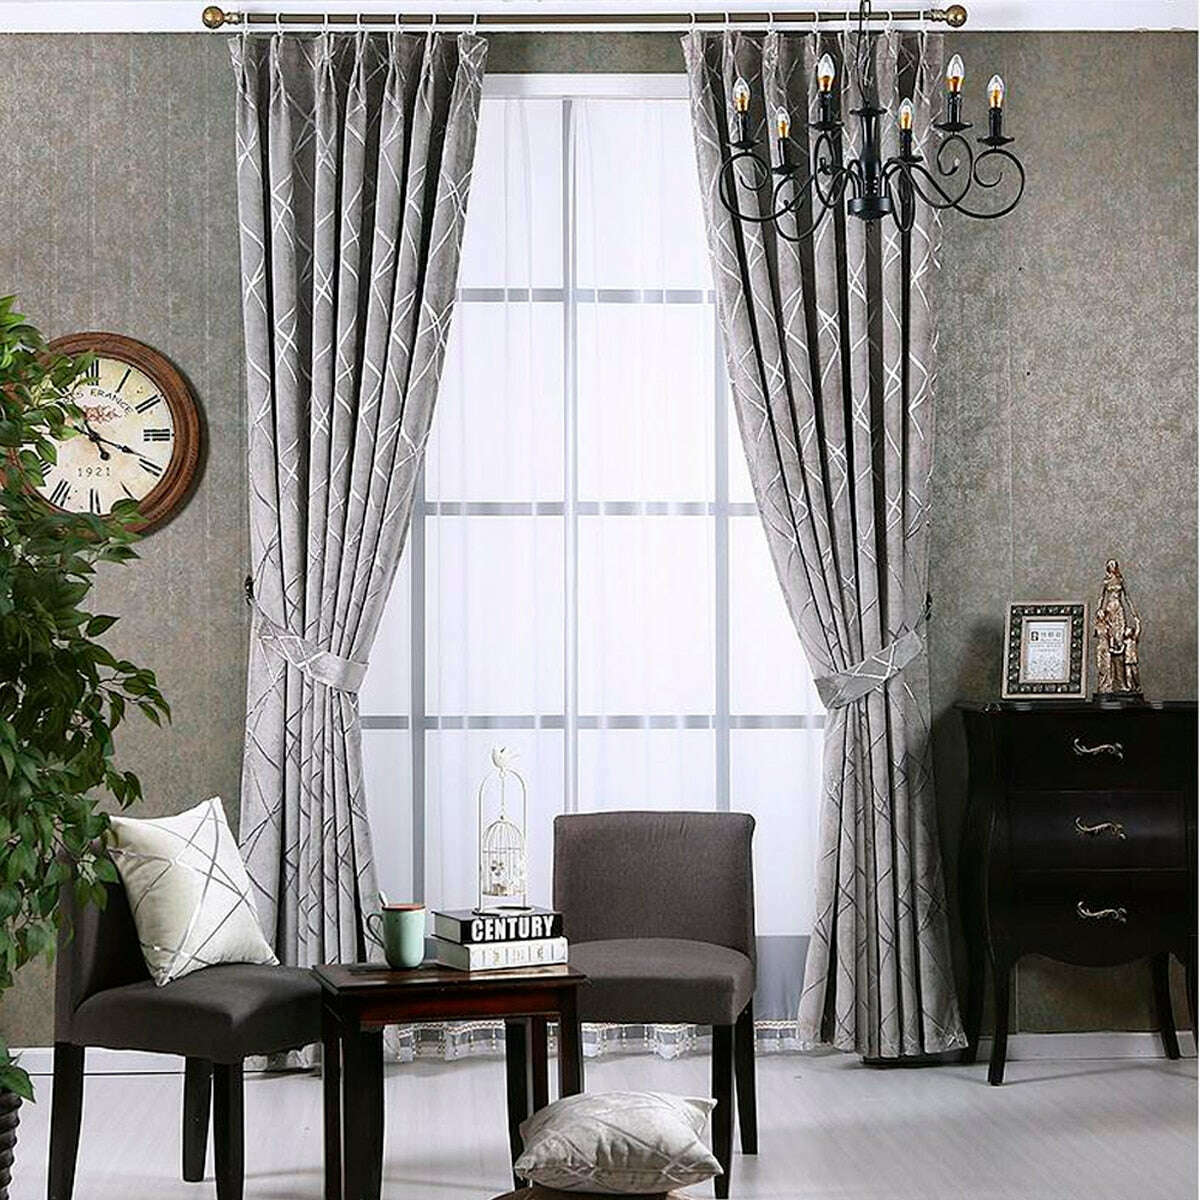 Zoey American Modern Luxury Stripe Pattern Blackout Curtain - Silver Gray